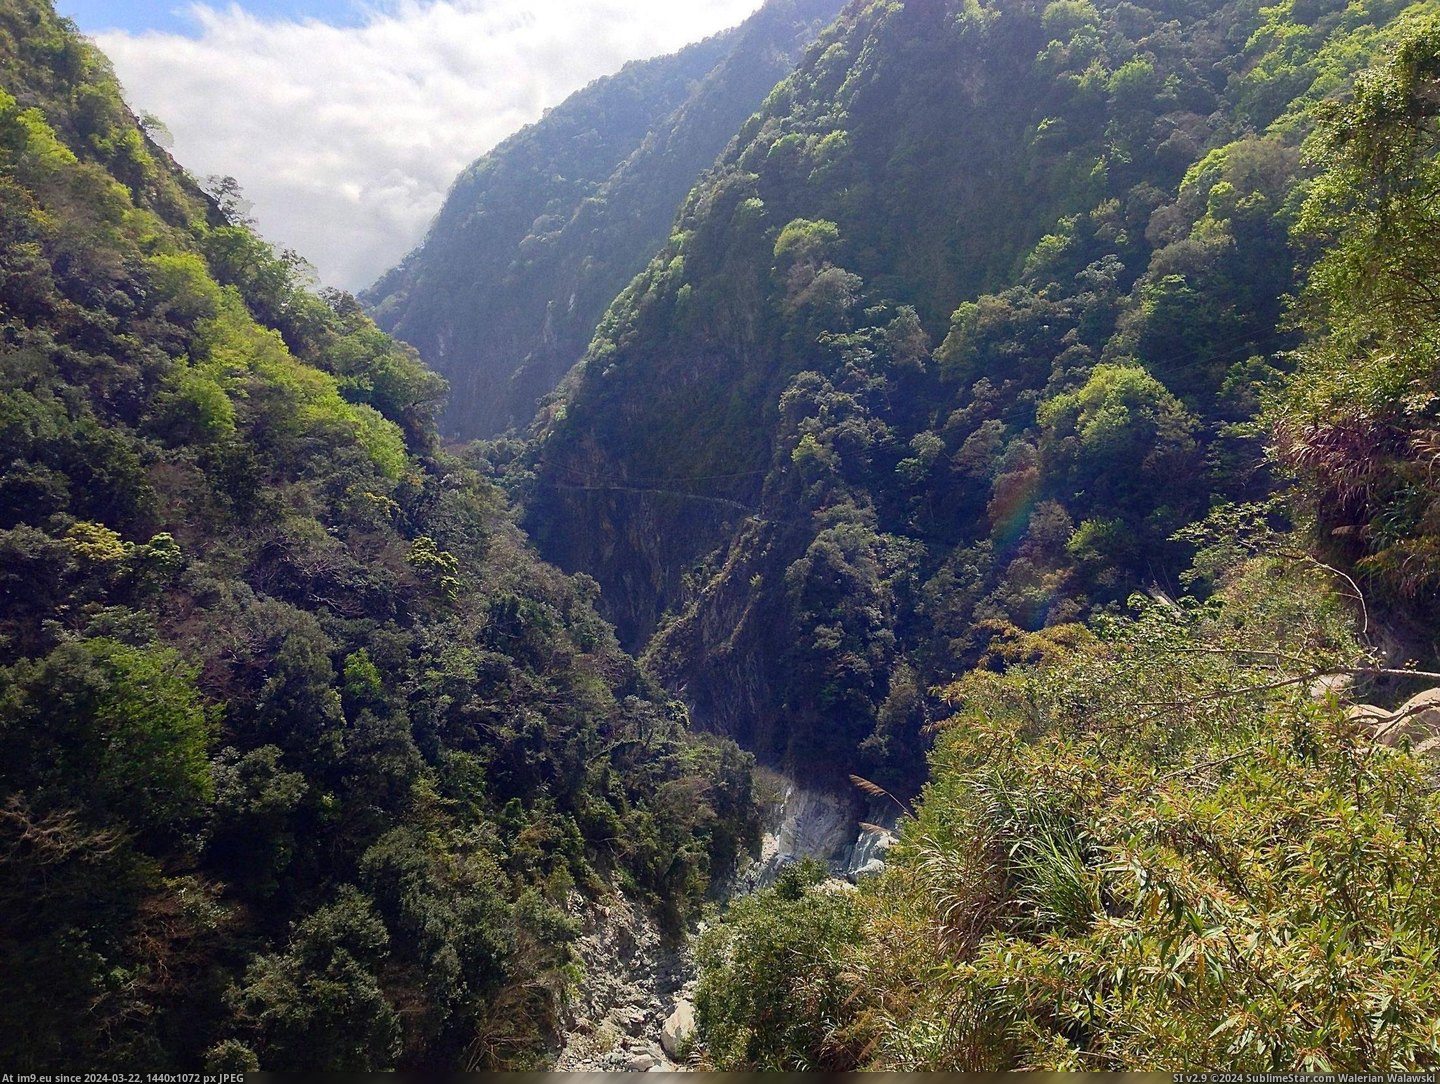 #Hiking #Taiwan #Taroko #Gorge [Earthporn] OC- Taken while hiking in Taroko Gorge, Taiwan. [2203 x 1652] Pic. (Obraz z album My r/EARTHPORN favs))